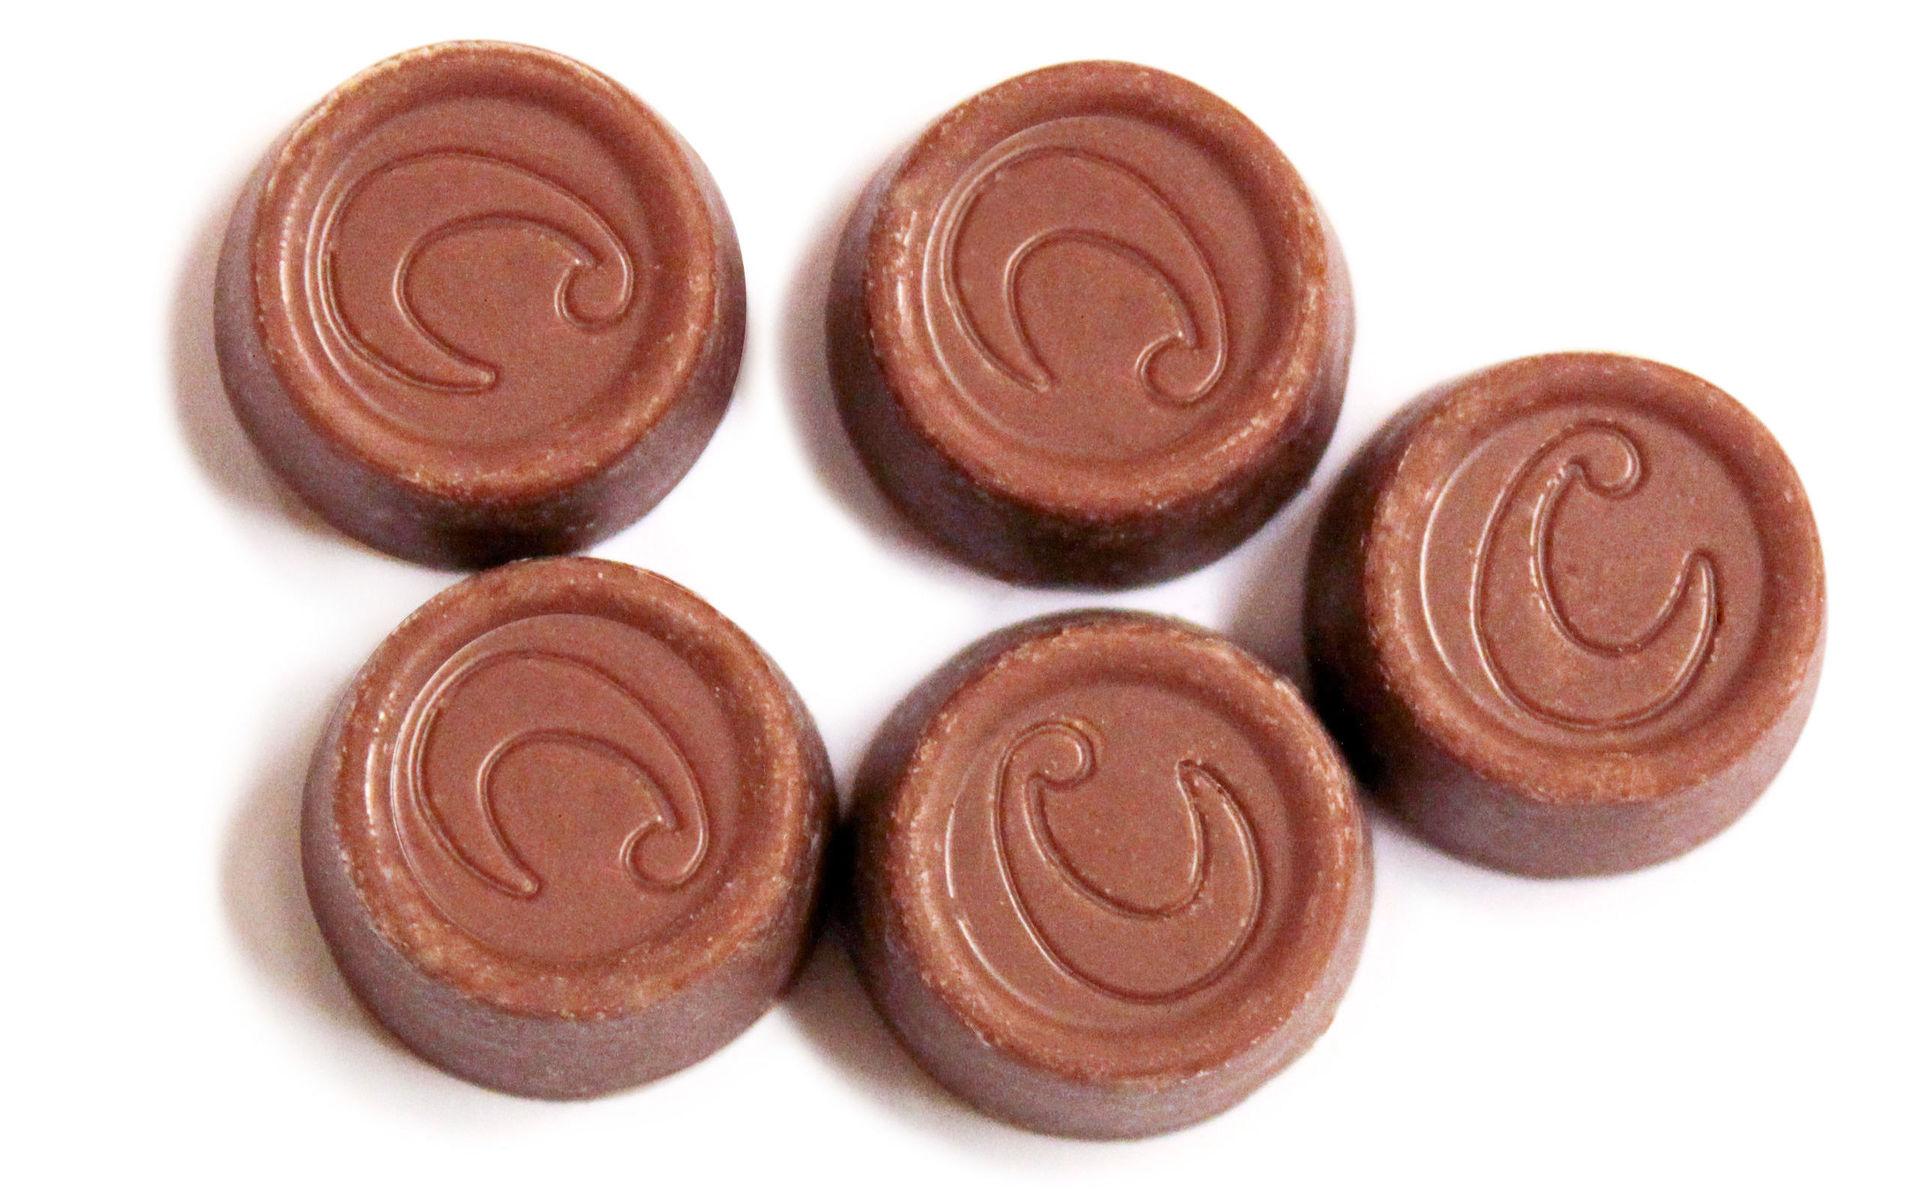 Cloetta choklad finns med i svenskarnas bästa godispåse.